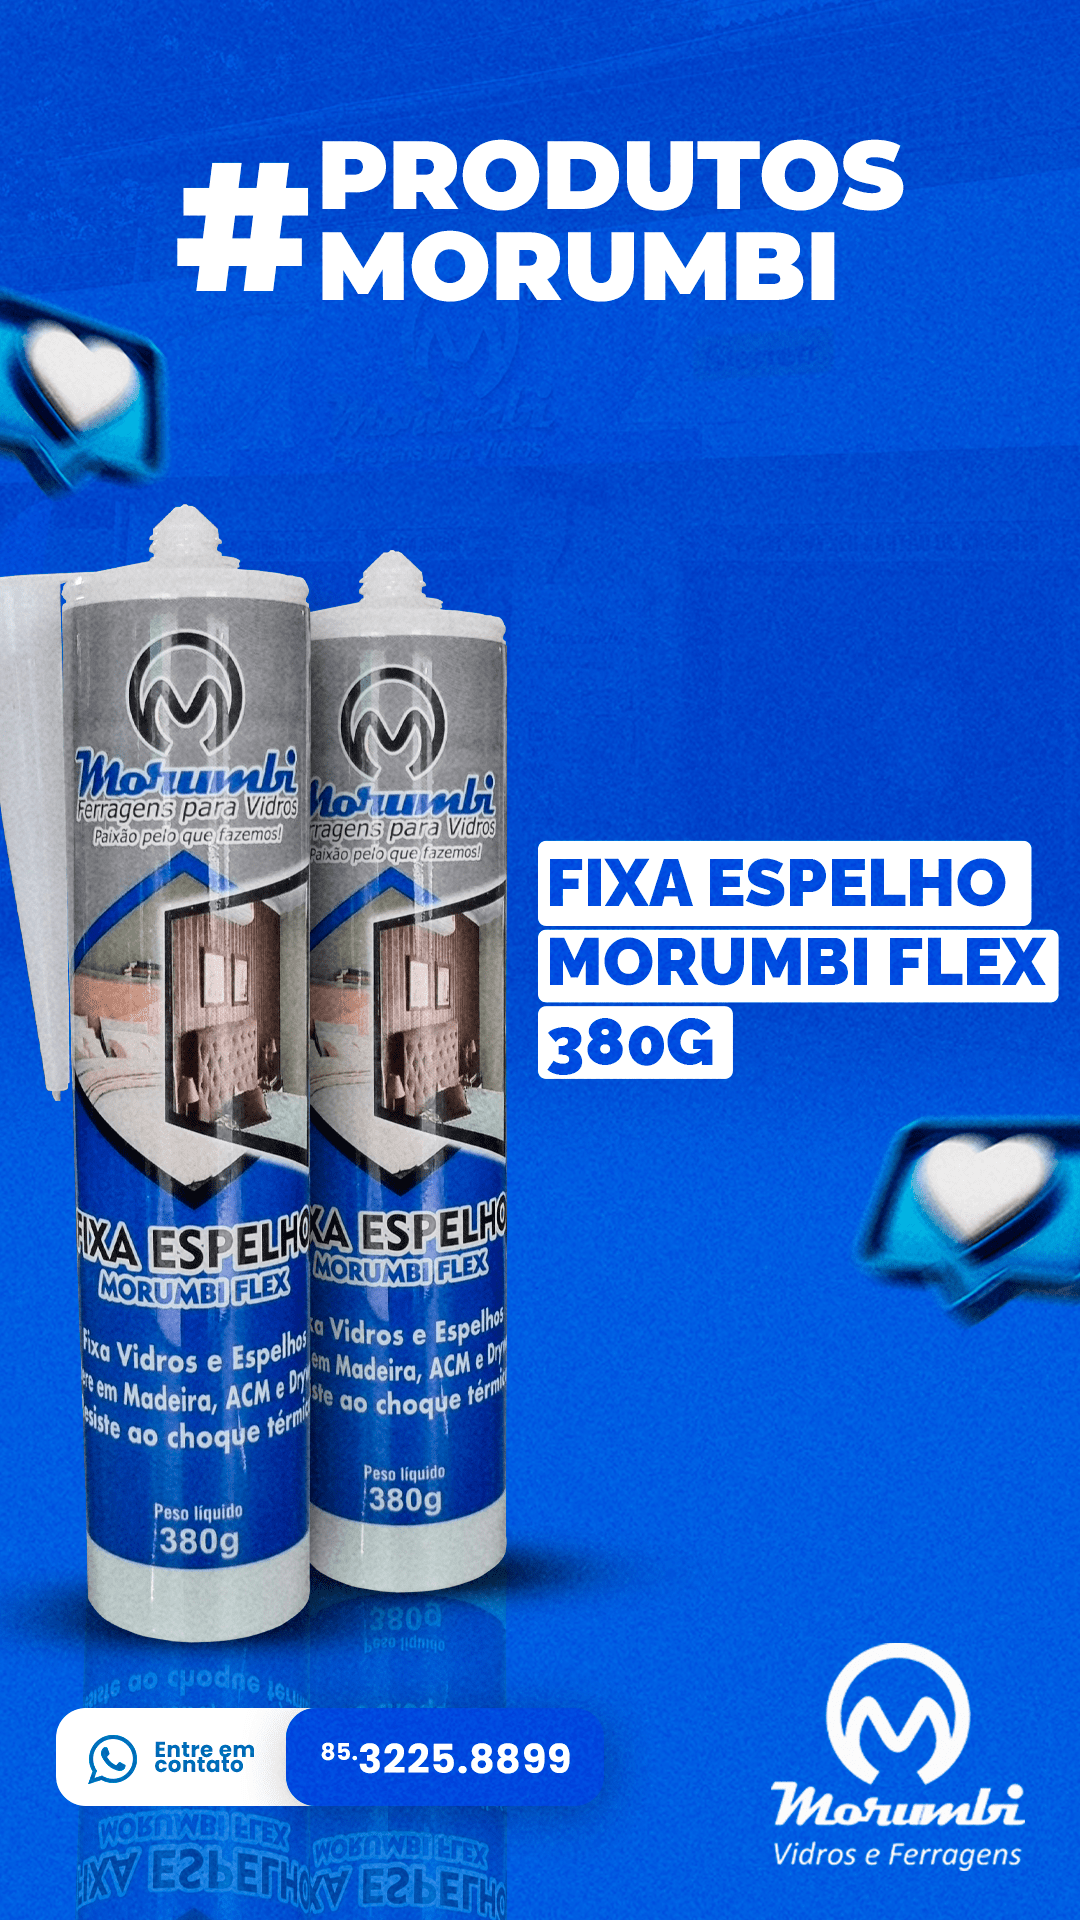 FIXA ESPELHO MORUMBI FLEX 380G - MORUMBI VIDROS E FERRAGENS